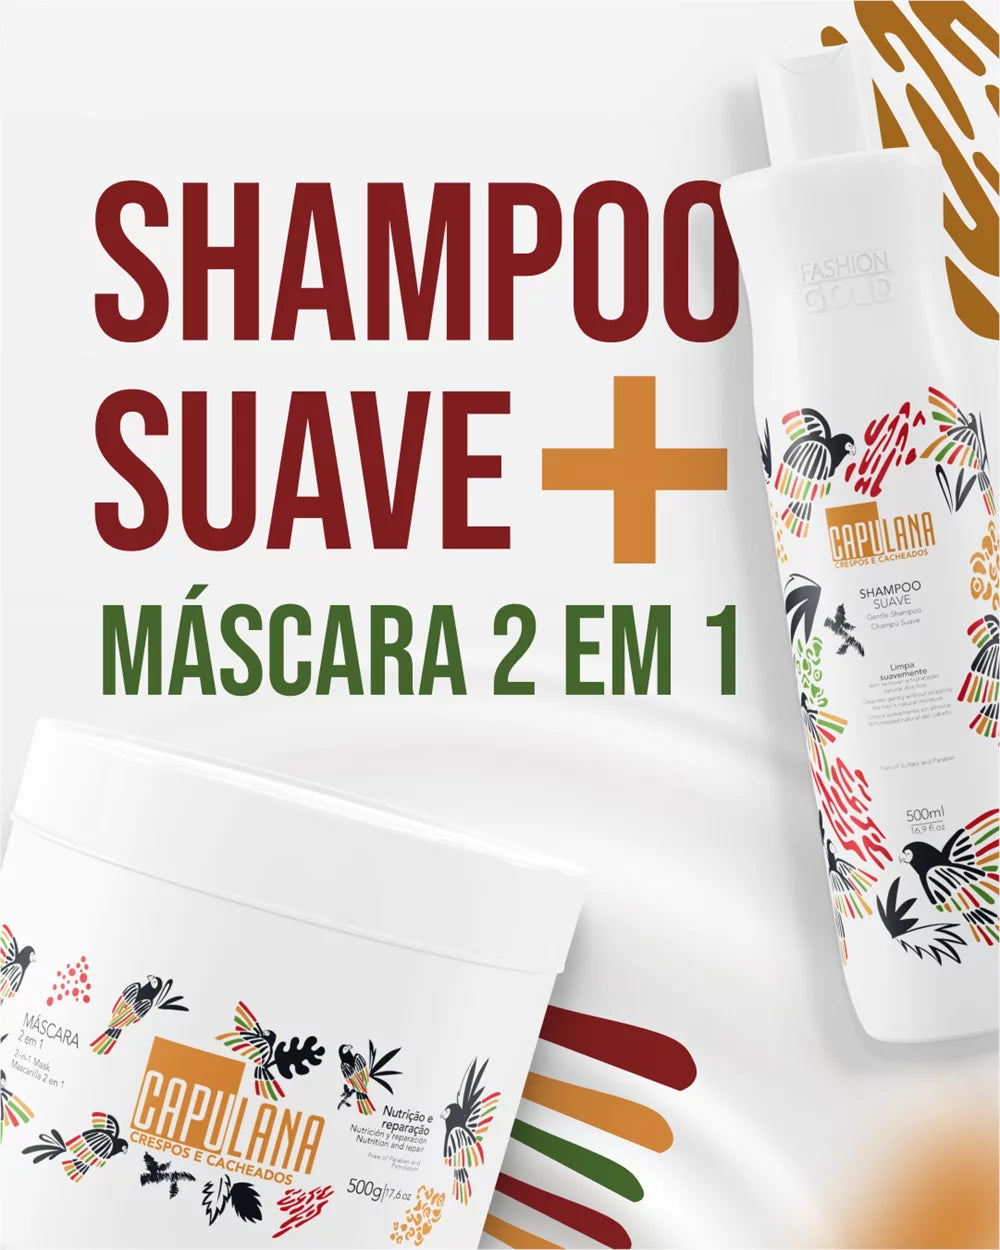 Gentle Shampoo 500ml + 2 in 1 Mask 500g - Capulana